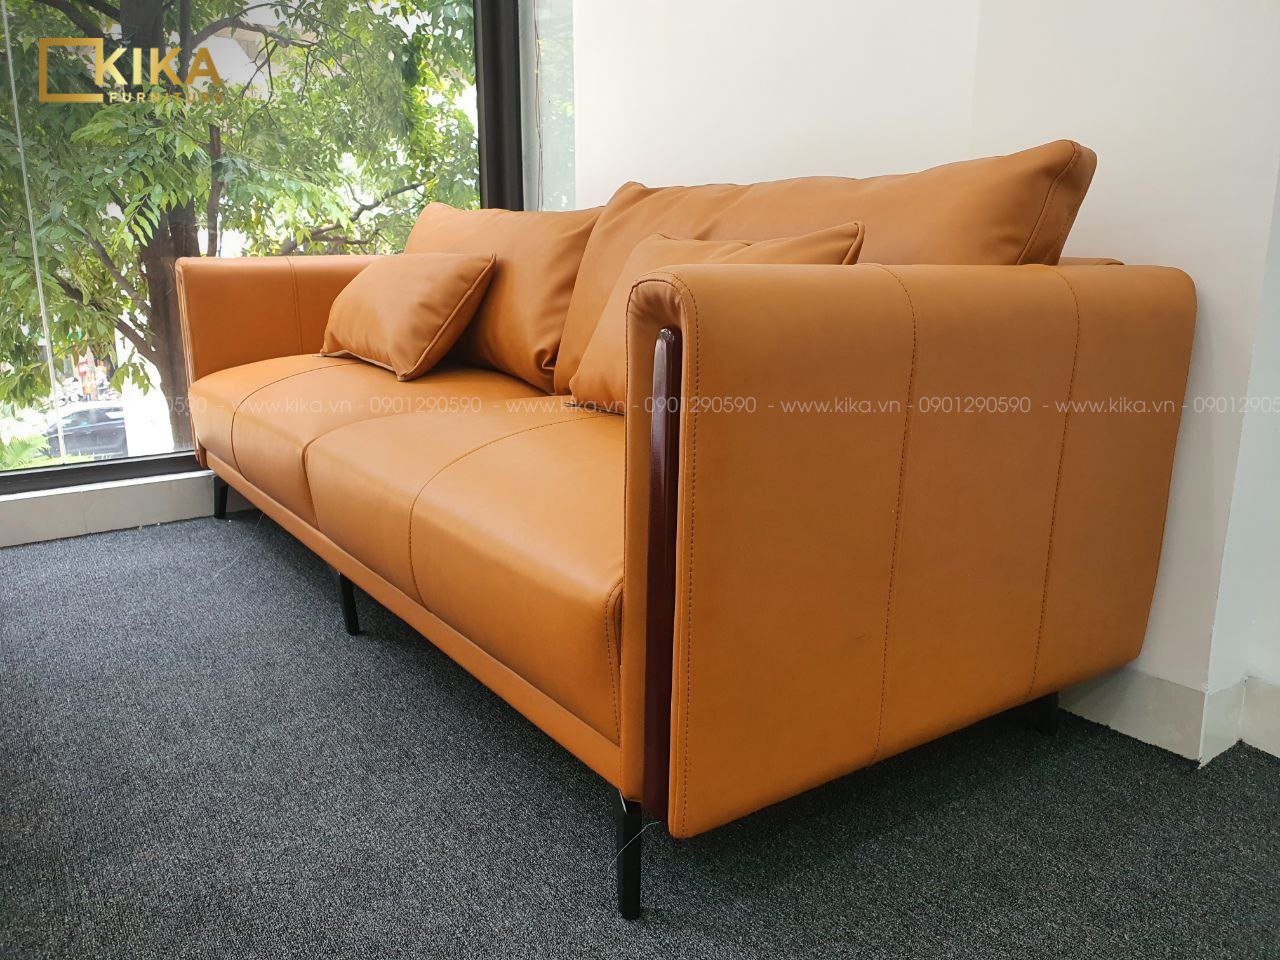 Sofa da SF122 màu cam 